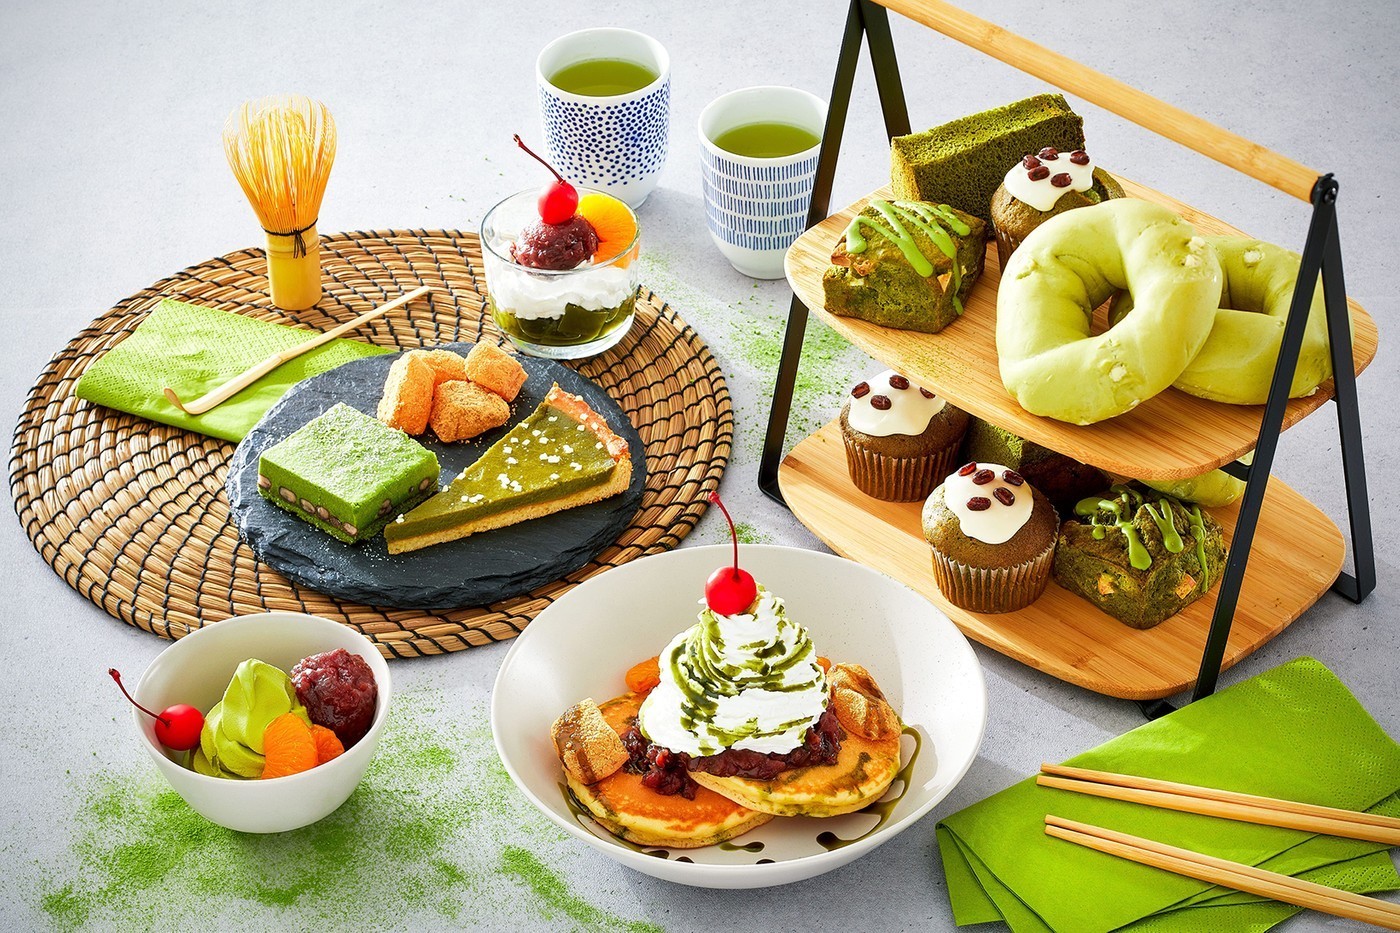 日本宜家 IKEA 推出最新抹茶限时甜点菜单